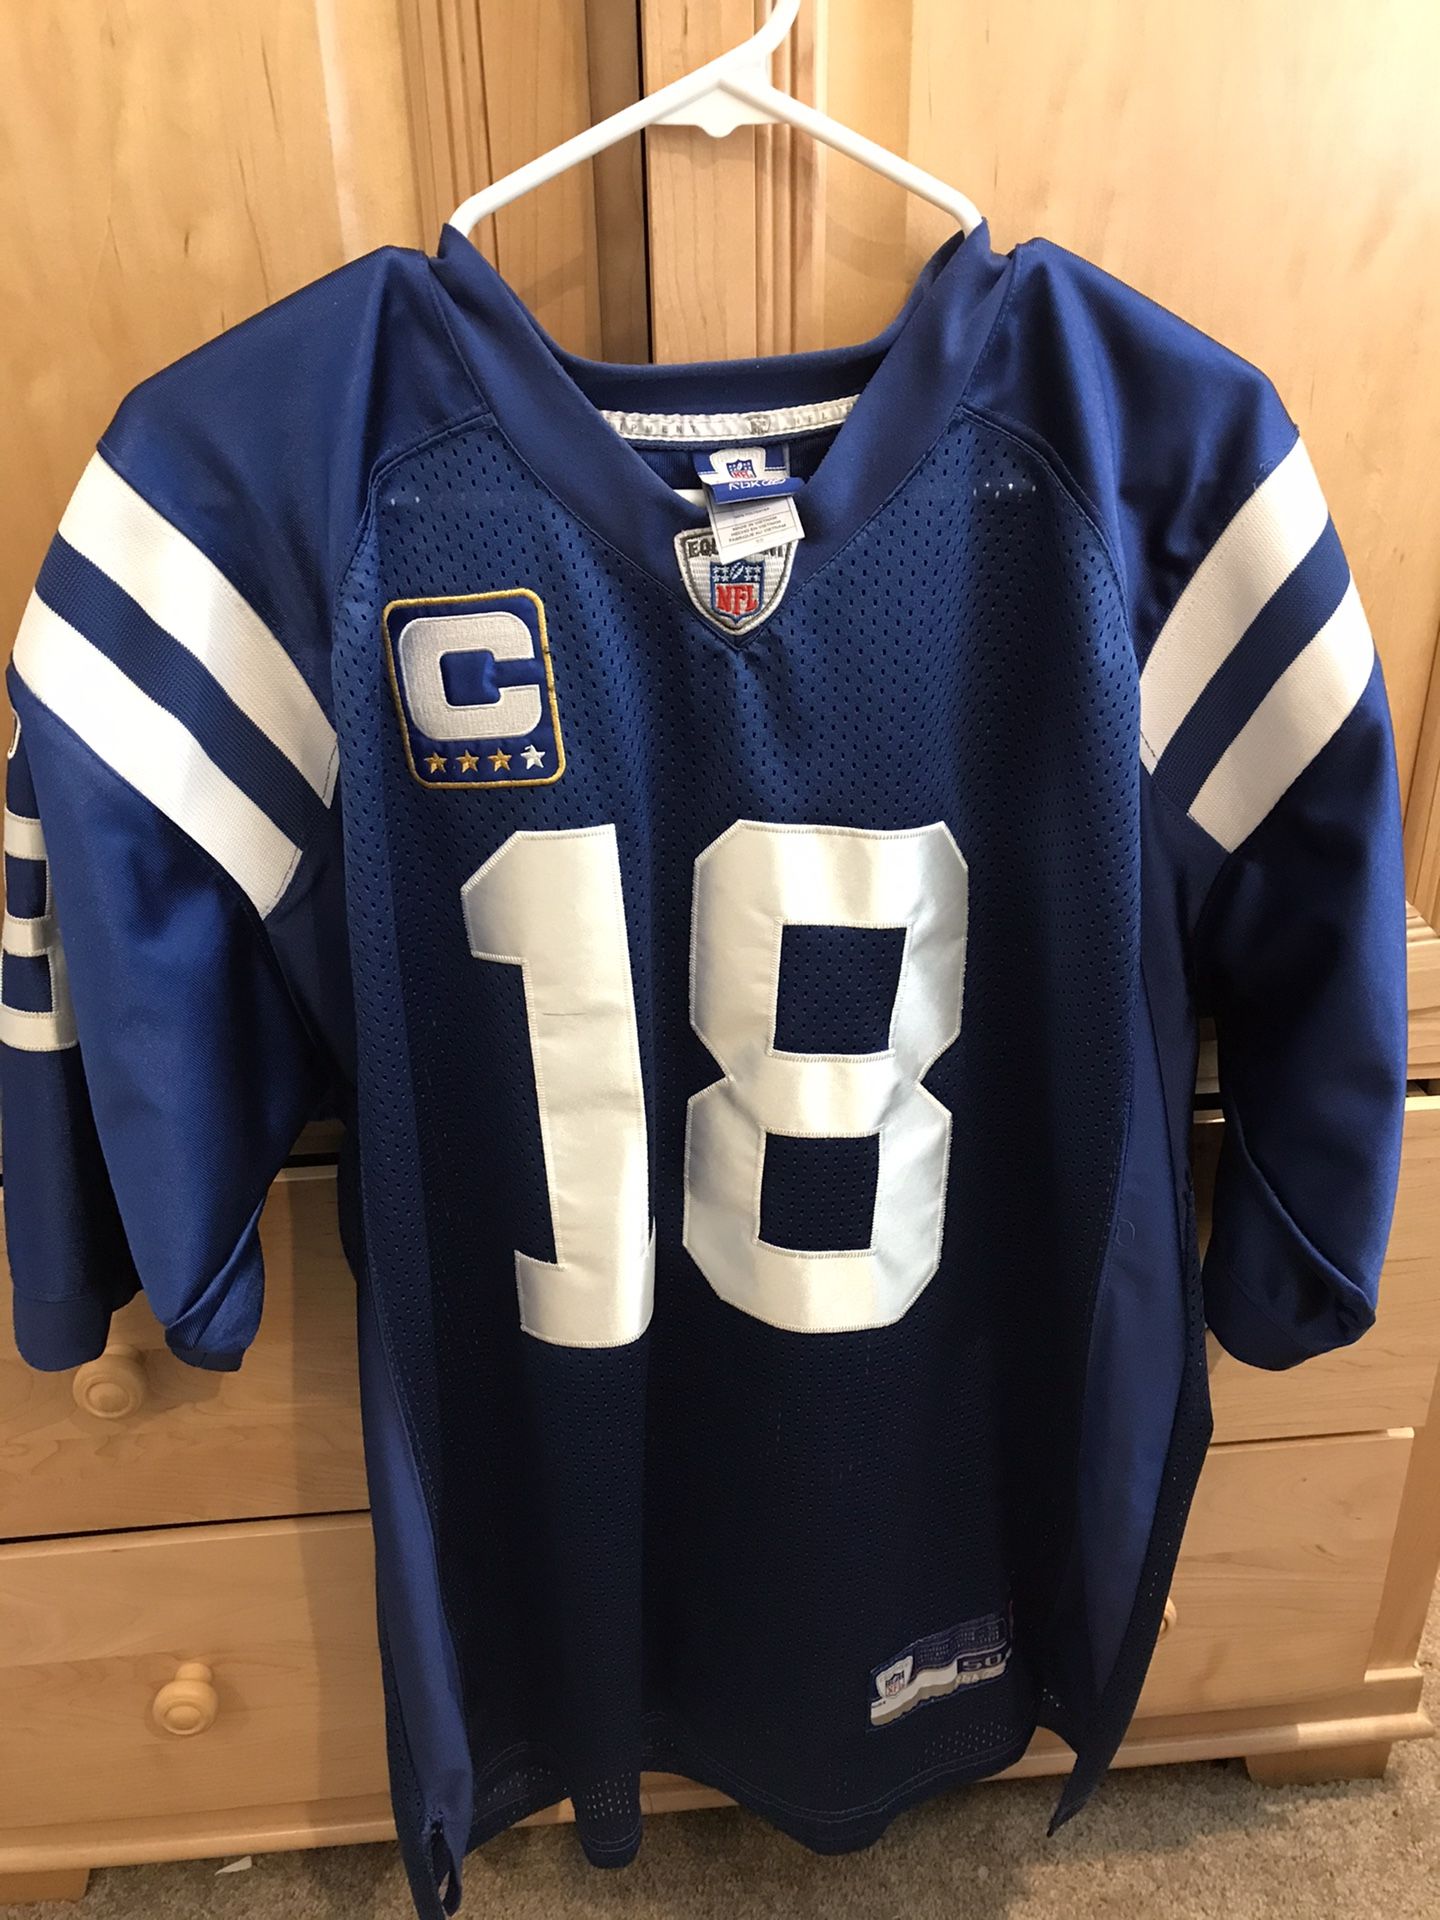 Peyton Manning Indianapolis Colts Jersey reebok size 50 Large